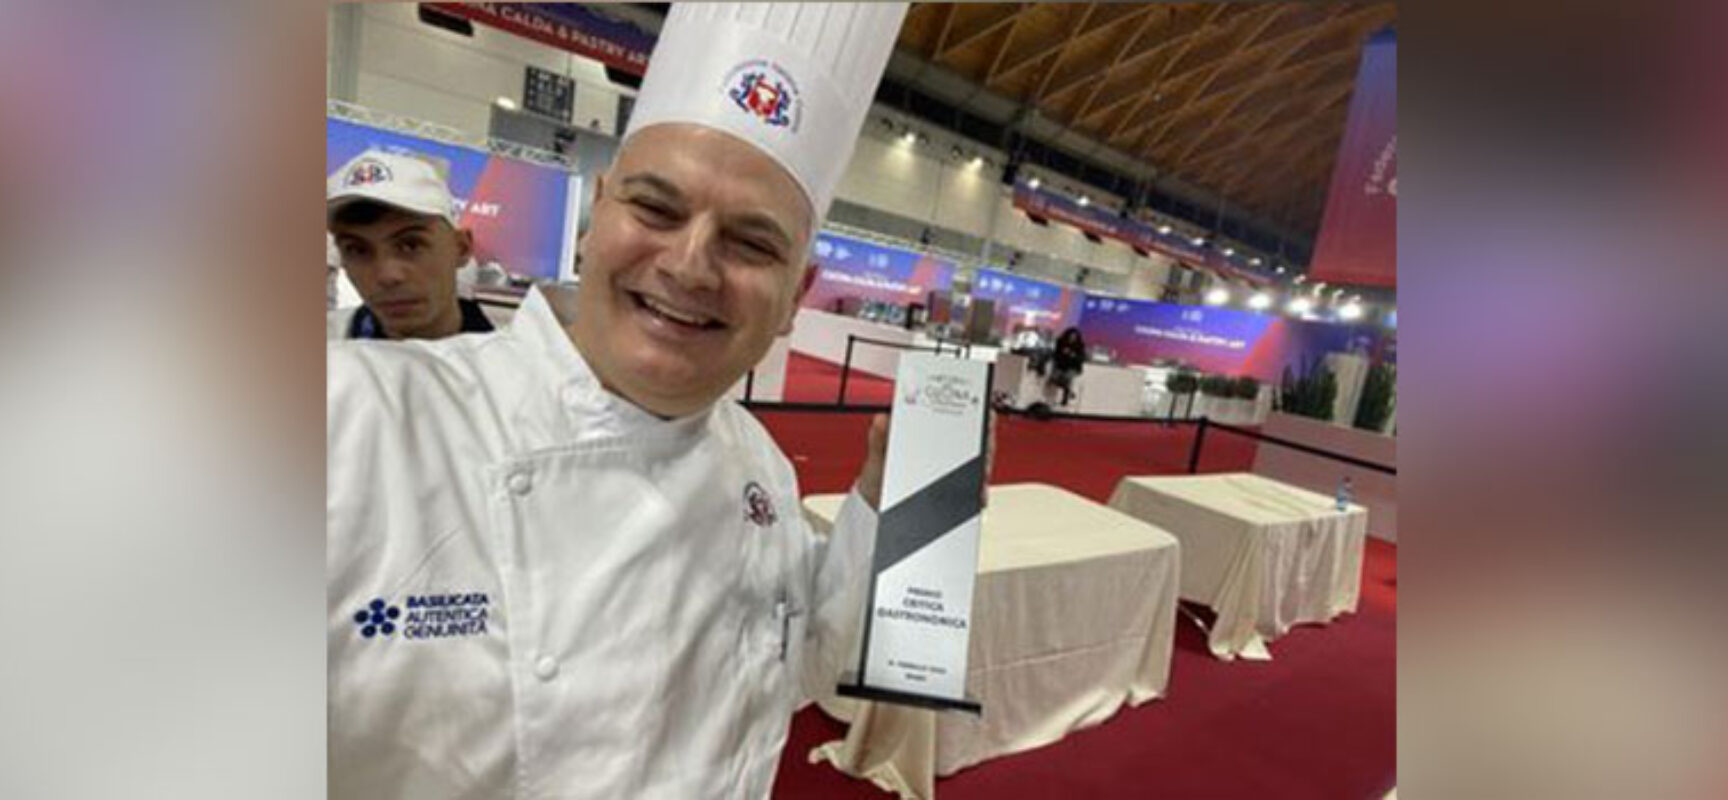 Puglia d’argento ai Campionati di Cucina Italiana, il biscegliese Lampedecchia alla guida del team